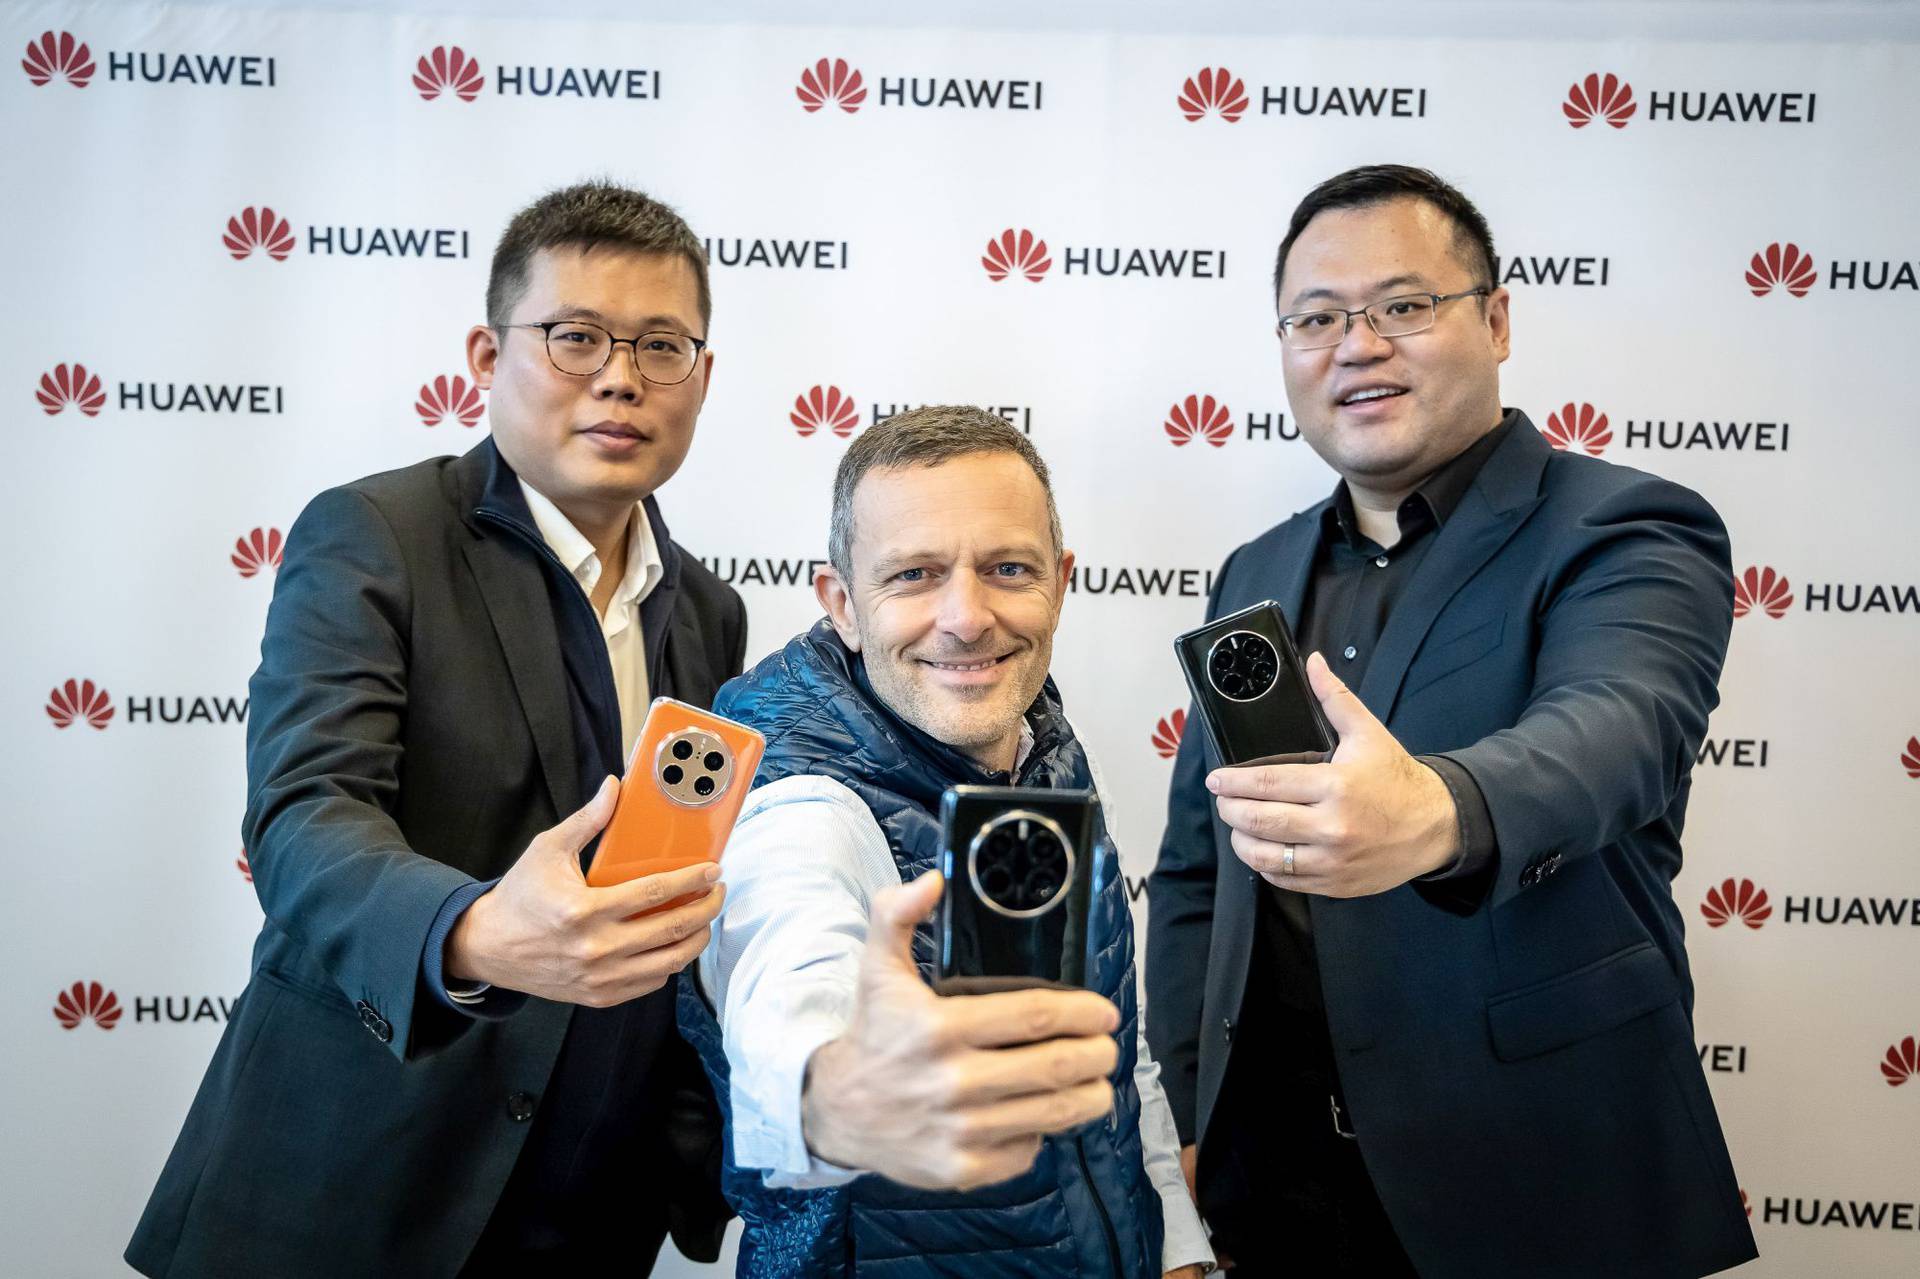 Huawei i Juraj Šebalj lokalno predstavili najnoviji flagship: Stigao Huawei Mate 50 Pro